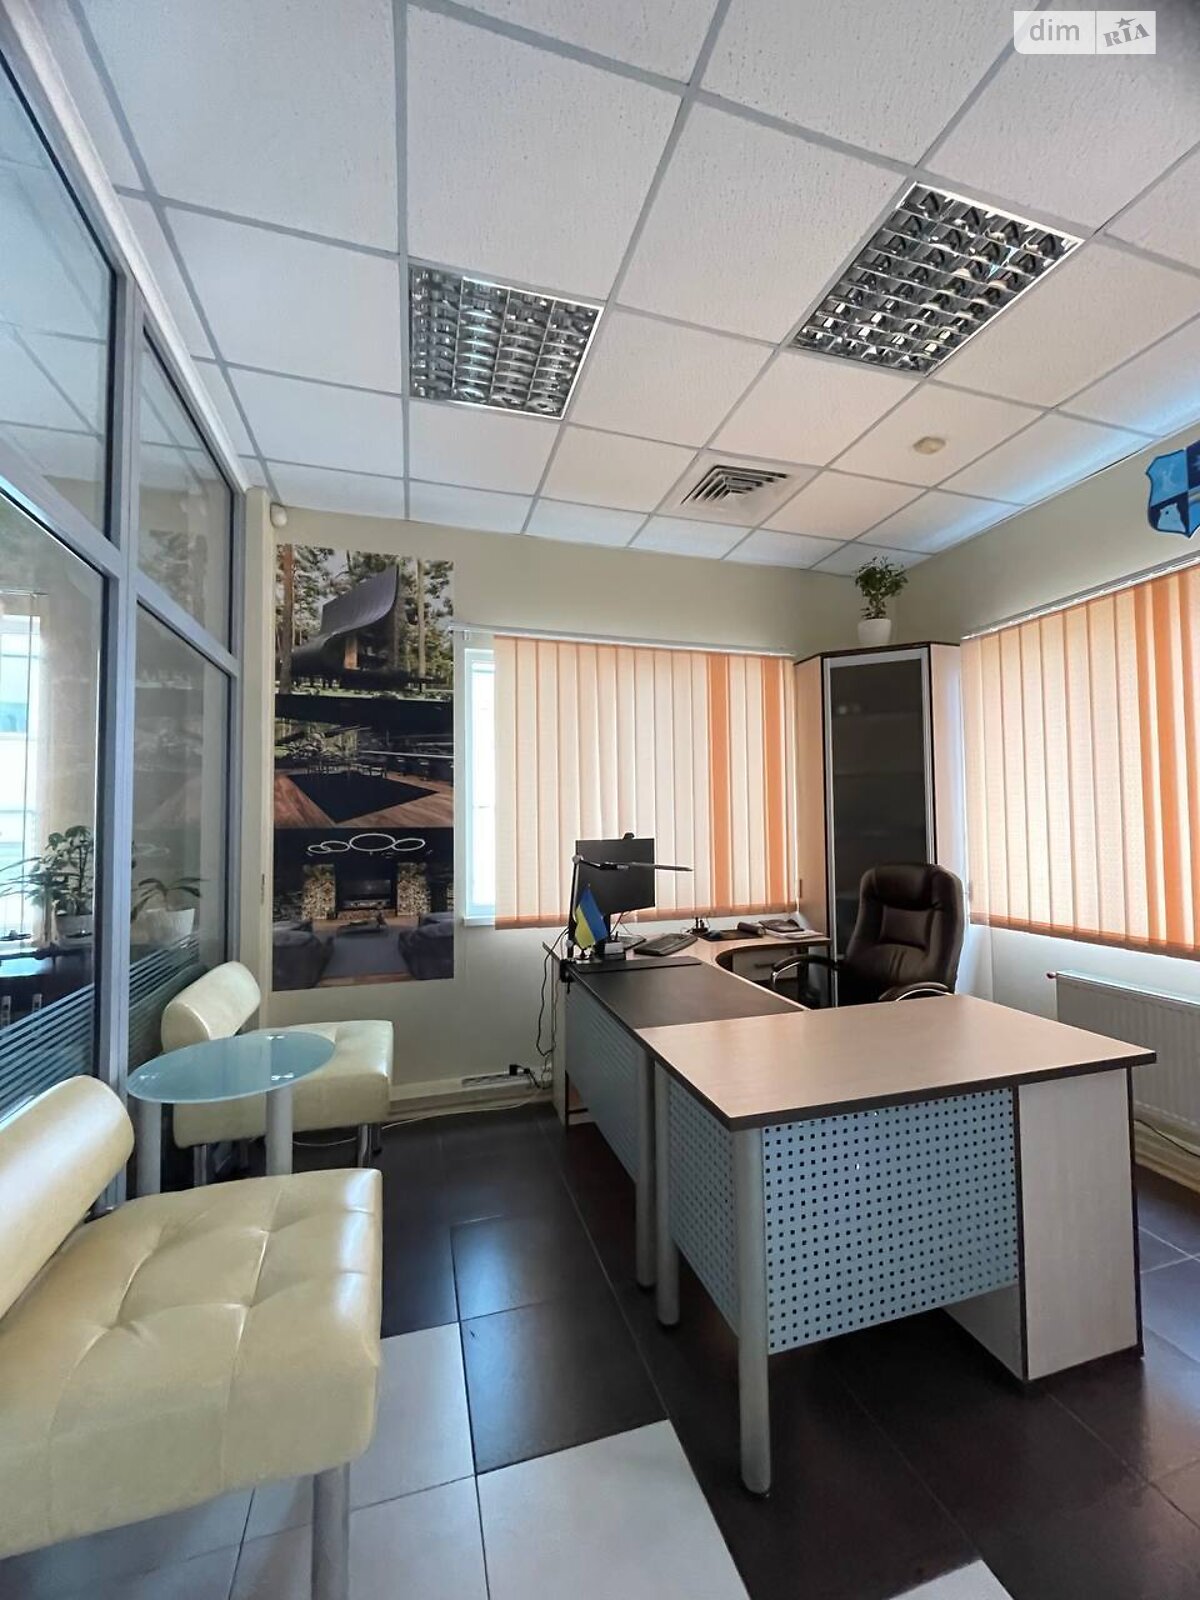 Аренда офисного помещения в Хмельницком, Старокостянтиновское шоссе 26, помещений - 1, этаж - 2 фото 1